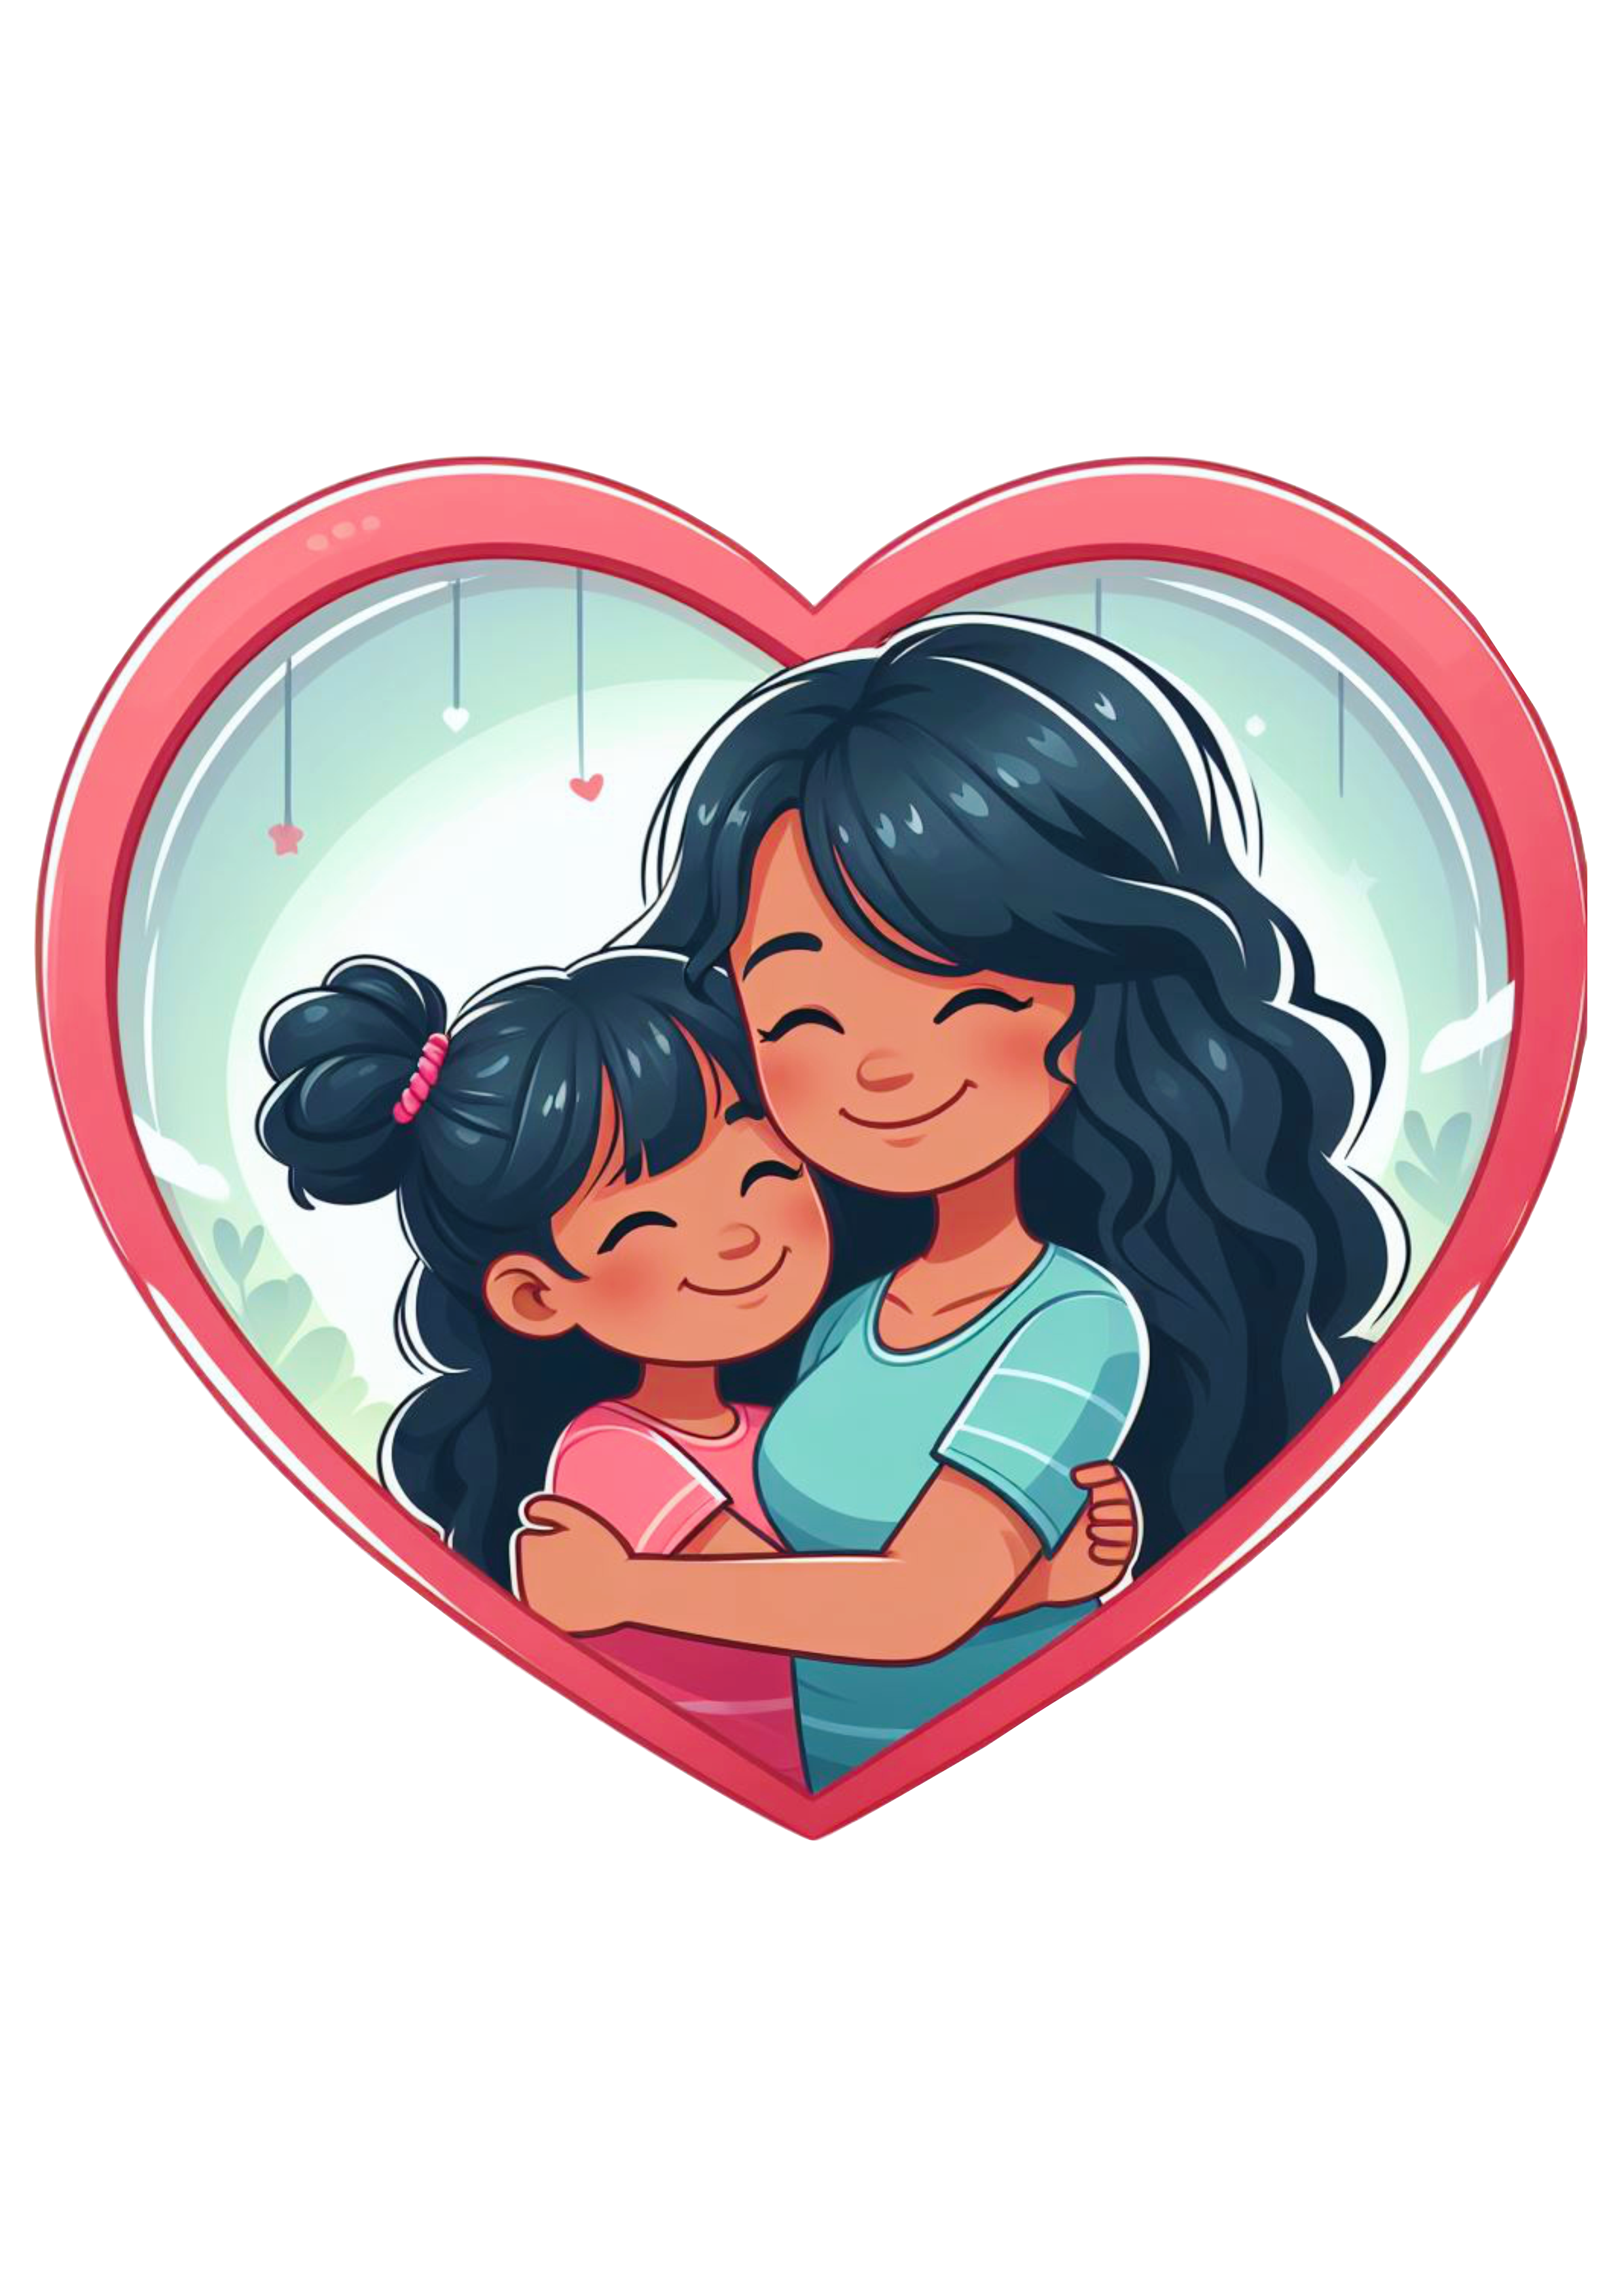 Dia das mães amor desenho infantil fundo transparente coração artes gráficas para decorar amor de mãe colorido png